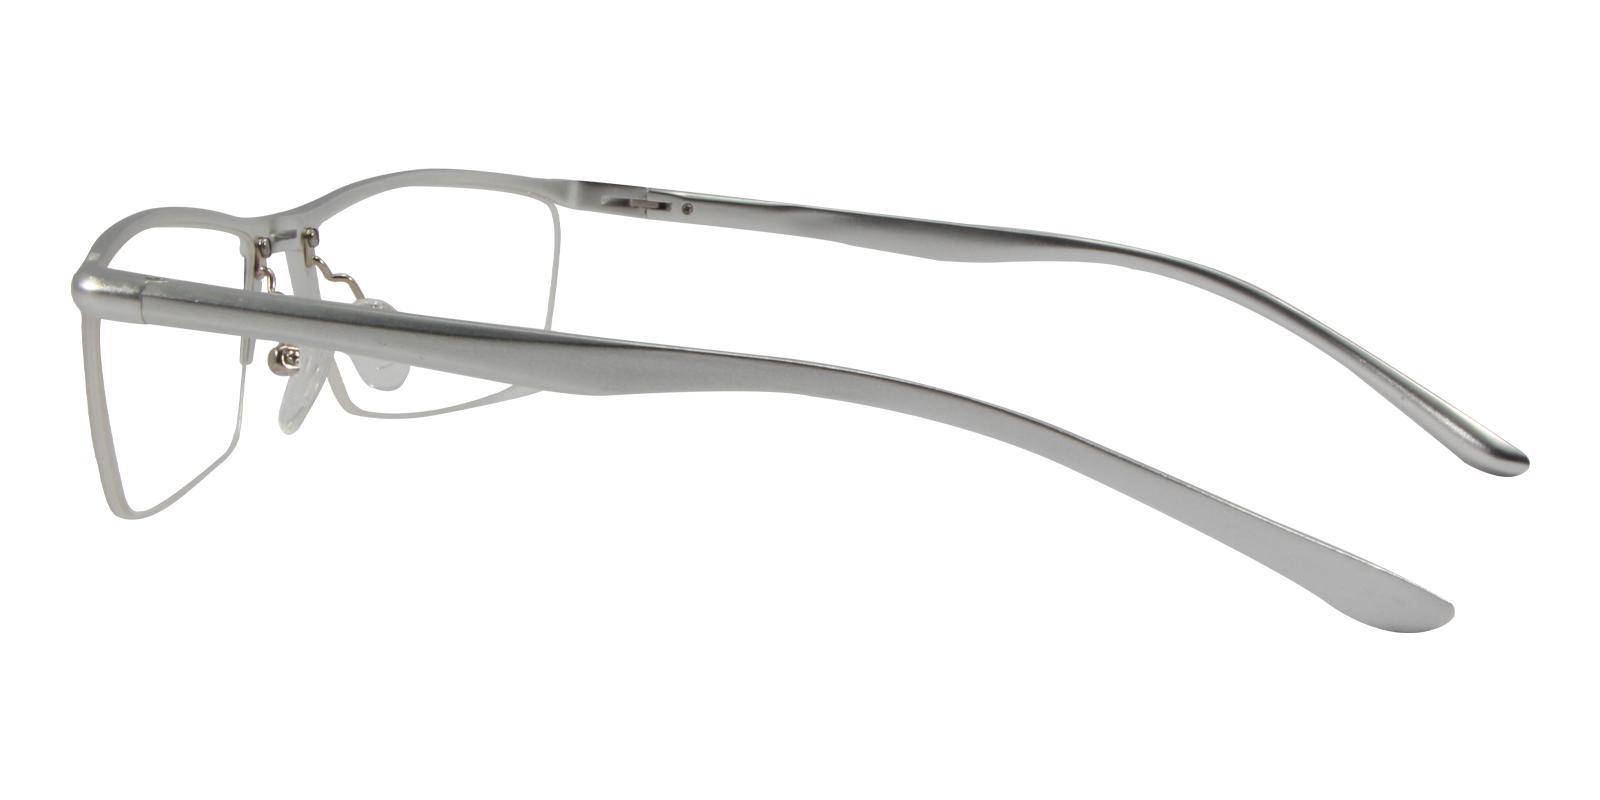 Cassini Silver Metal NosePads , SportsGlasses , SpringHinges Frames from ABBE Glasses